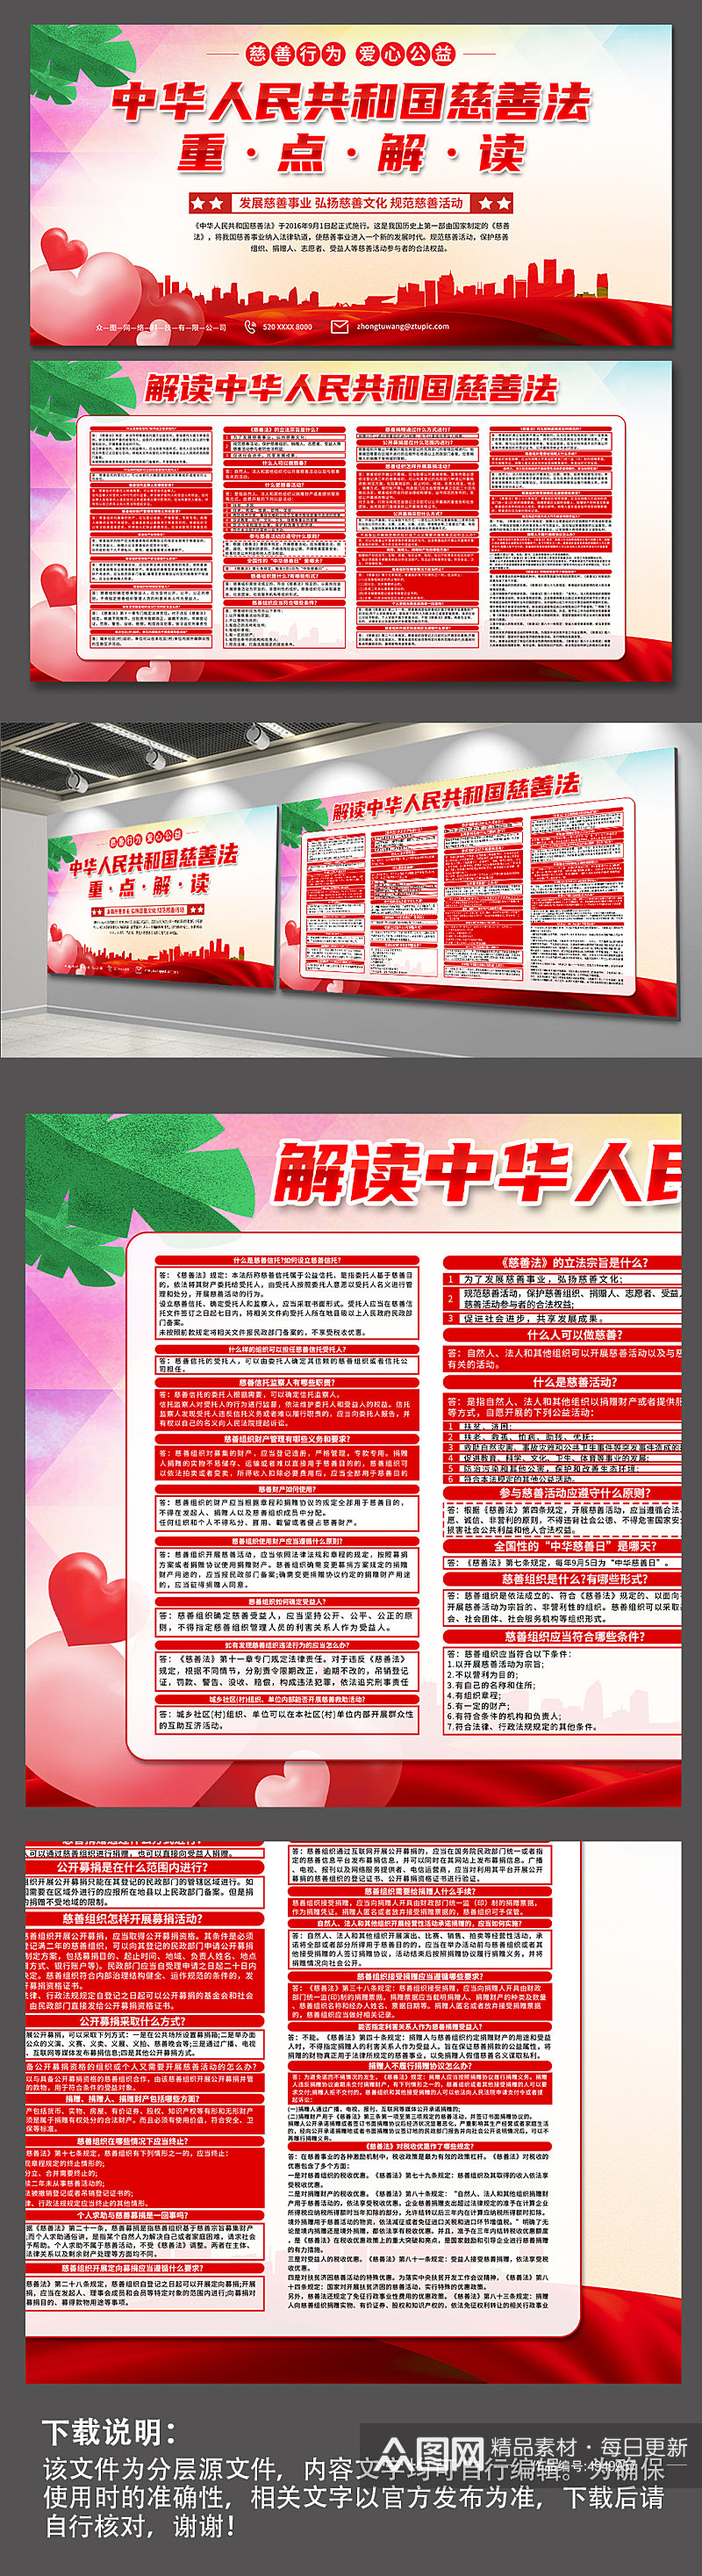 中华人民共和国慈善法科普展板素材